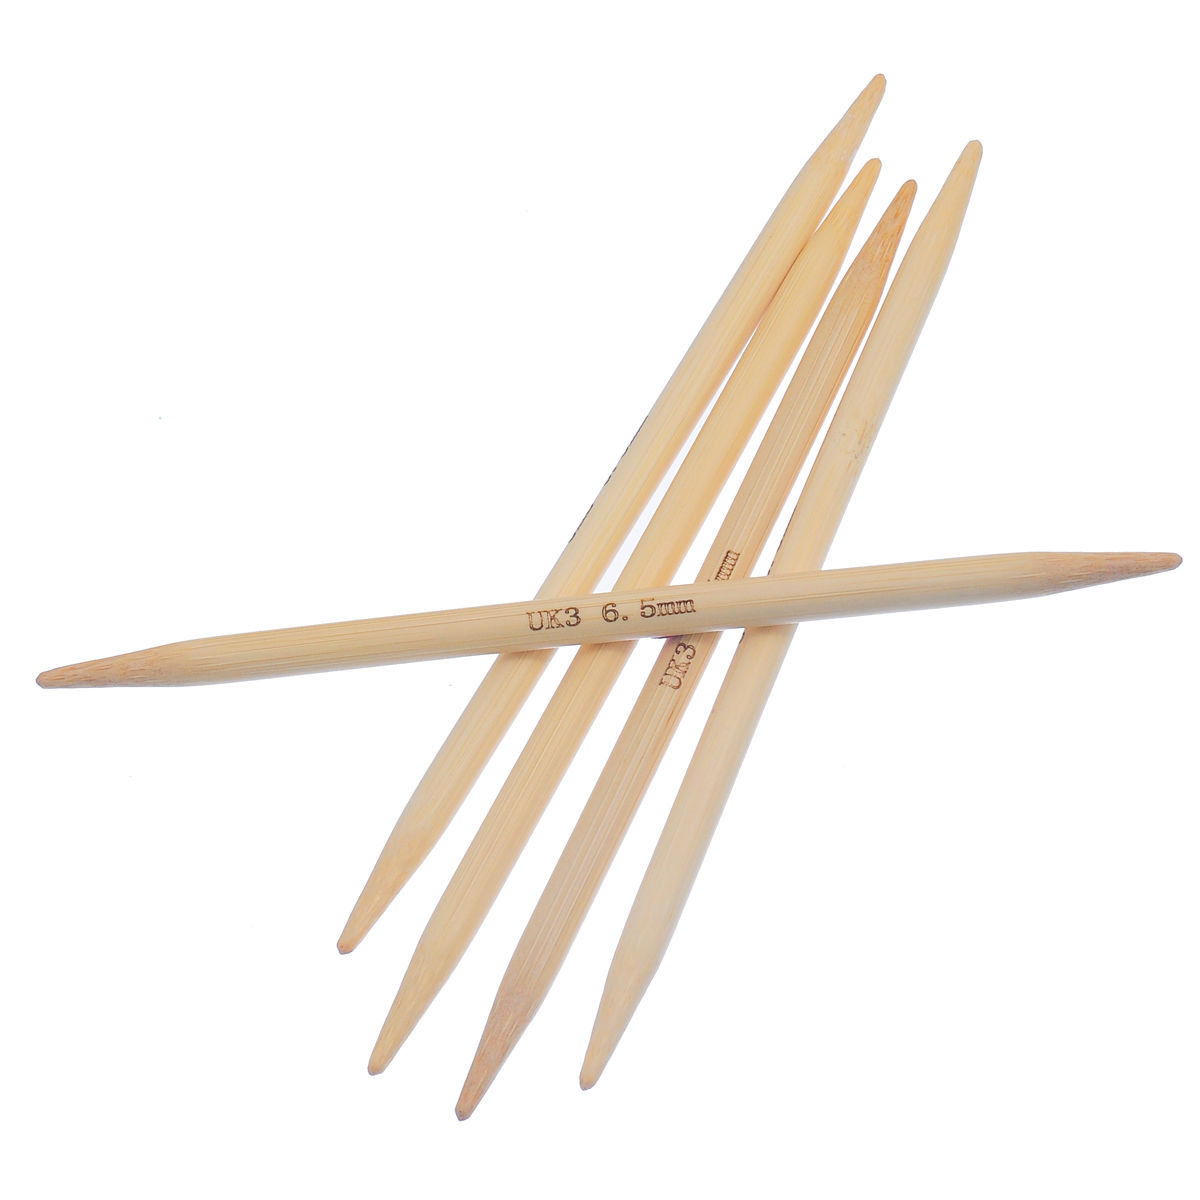 (UK3 6.5mm) 竹 ダブルポイント 編み針 ナチュラル 15cm 長さ、 1 セット ( 5 個/セット) の画像